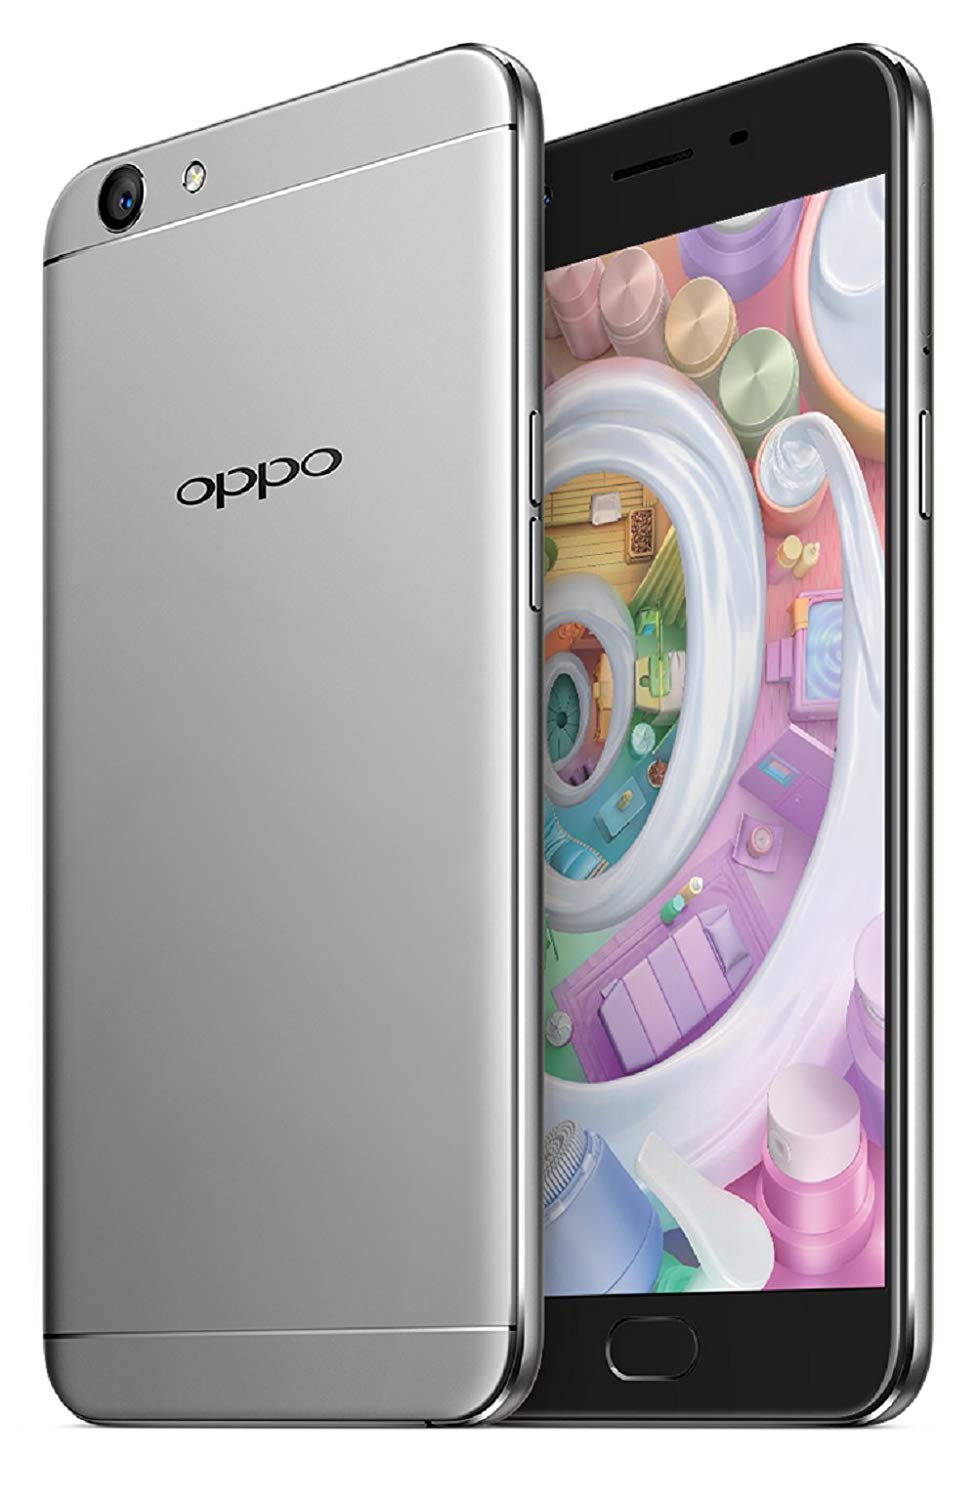 Oppo Ce0700 Model Name